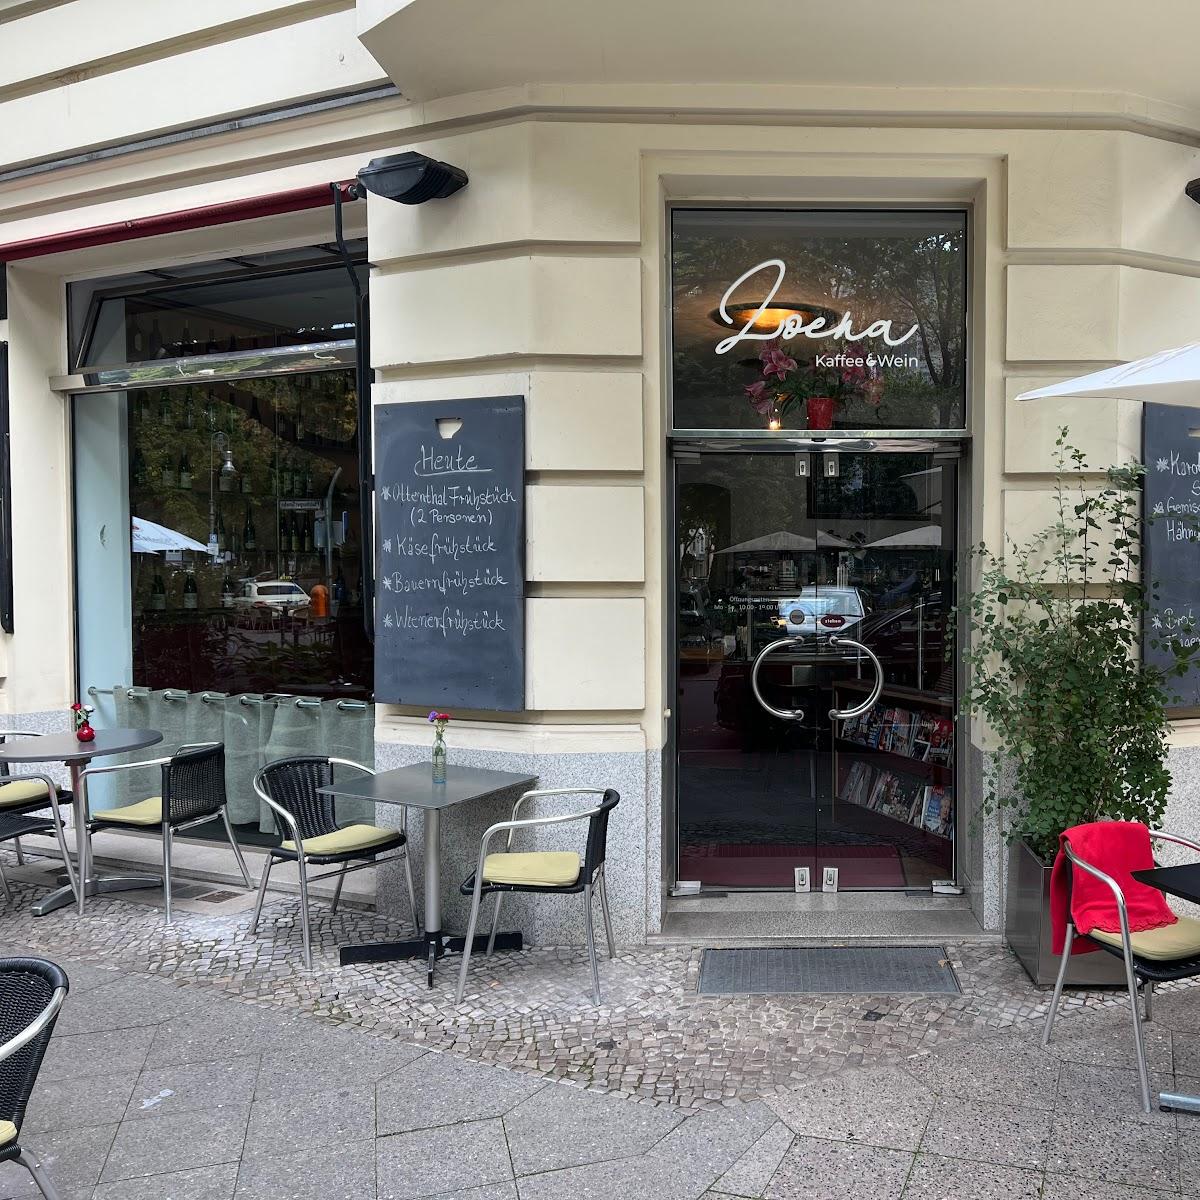 Restaurant "Loena Kaffee & Wein" in Berlin